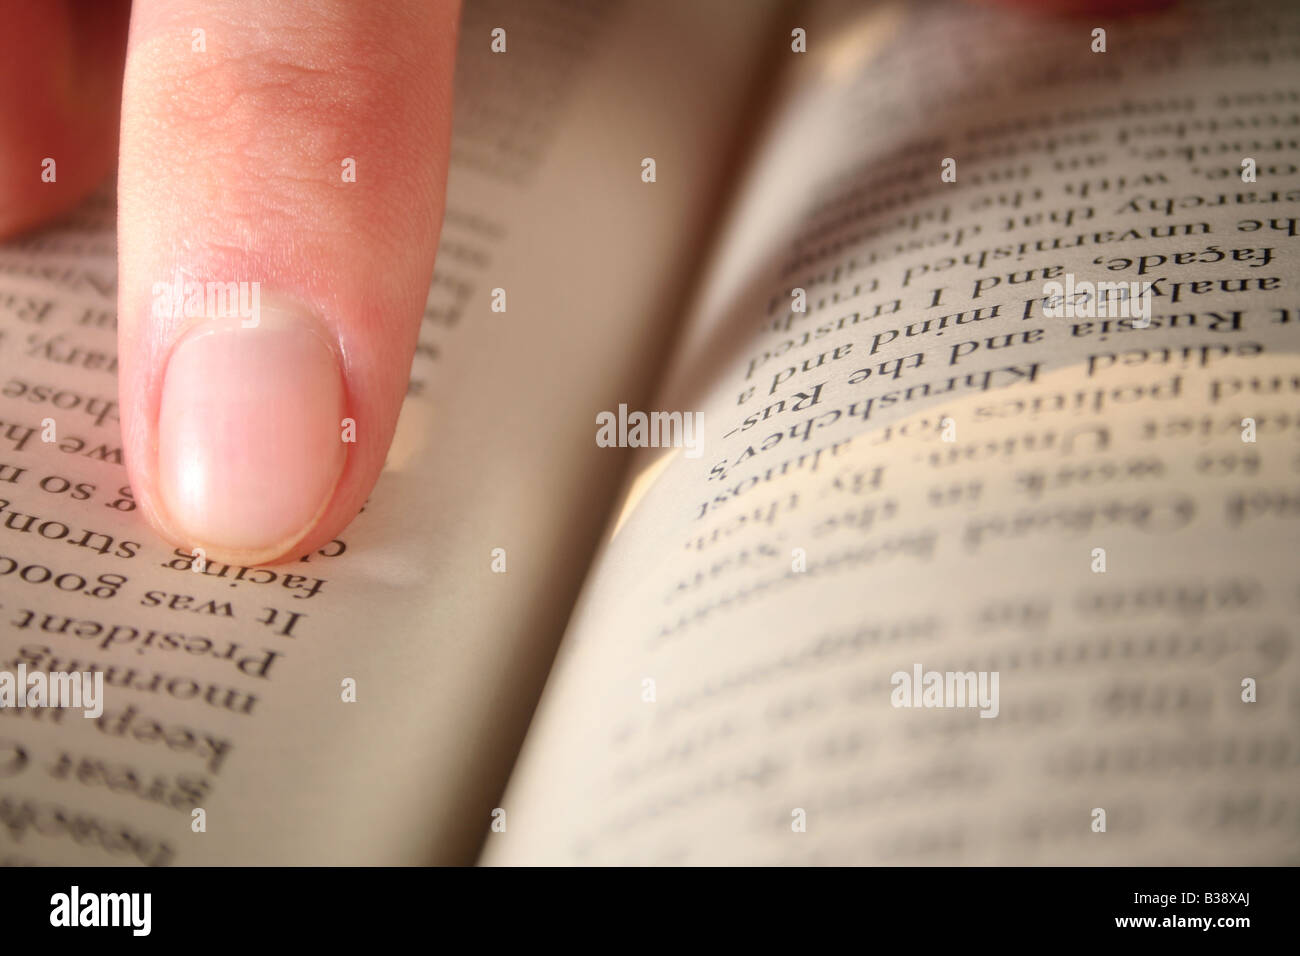 Un doigt pointé à un passage dans un livre Banque D'Images